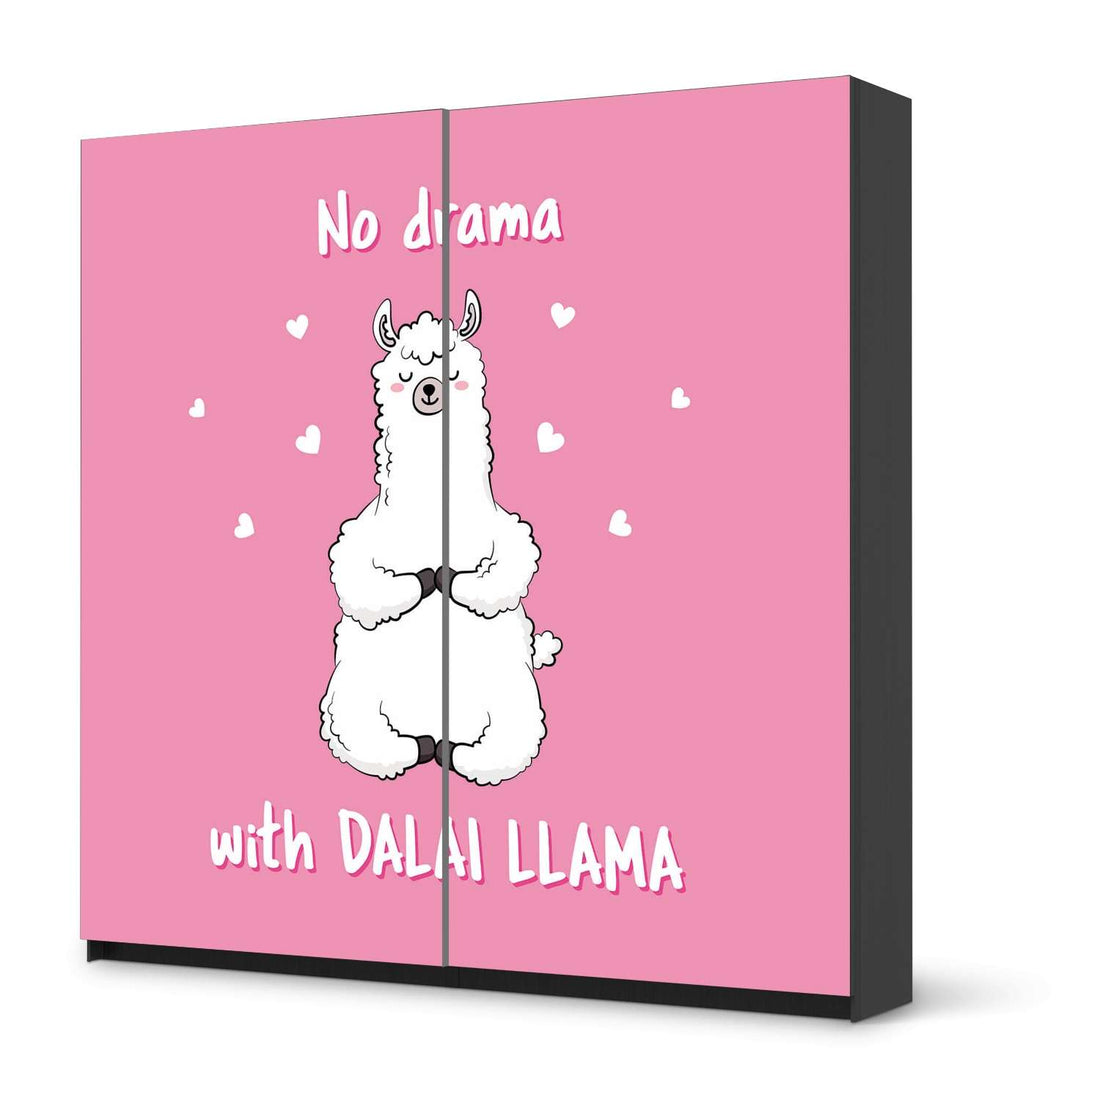 Möbel Klebefolie Dalai Llama - IKEA Pax Schrank 201 cm Höhe - Schiebetür - schwarz